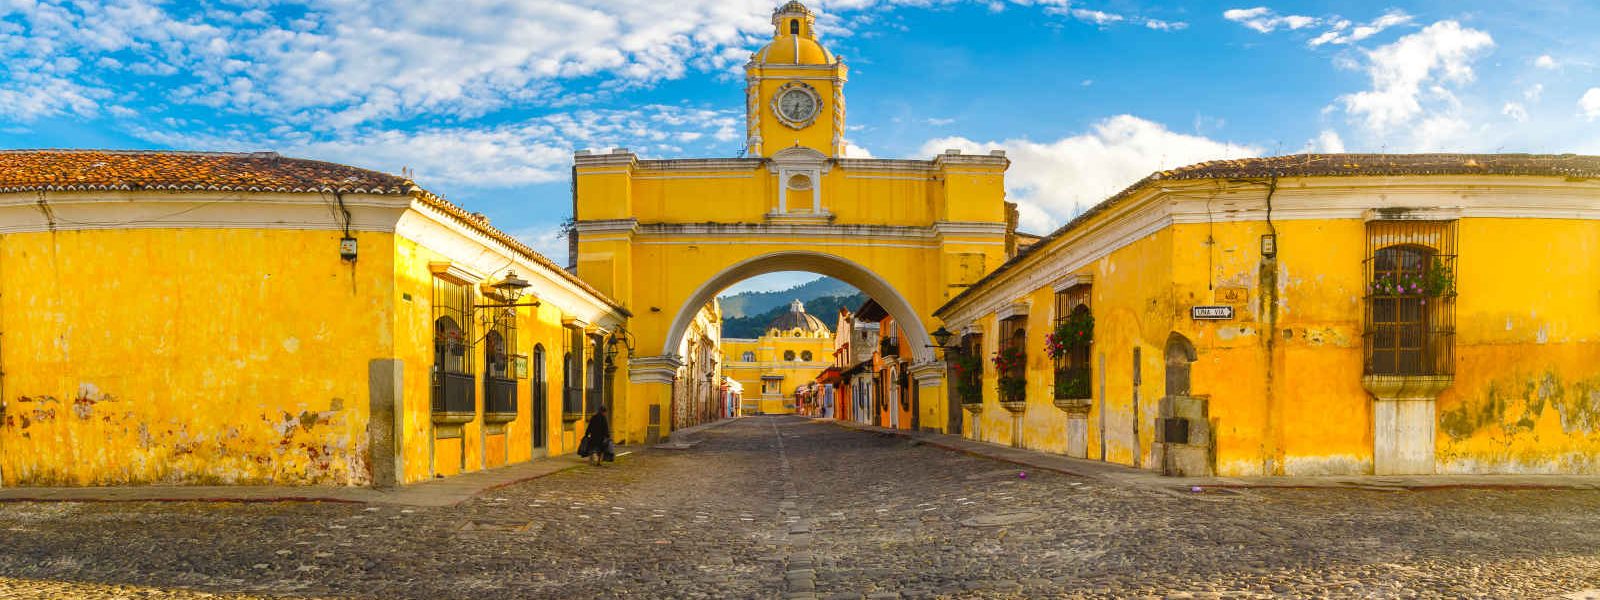 Arche de Santa Catalina,Antigua, Guatemala